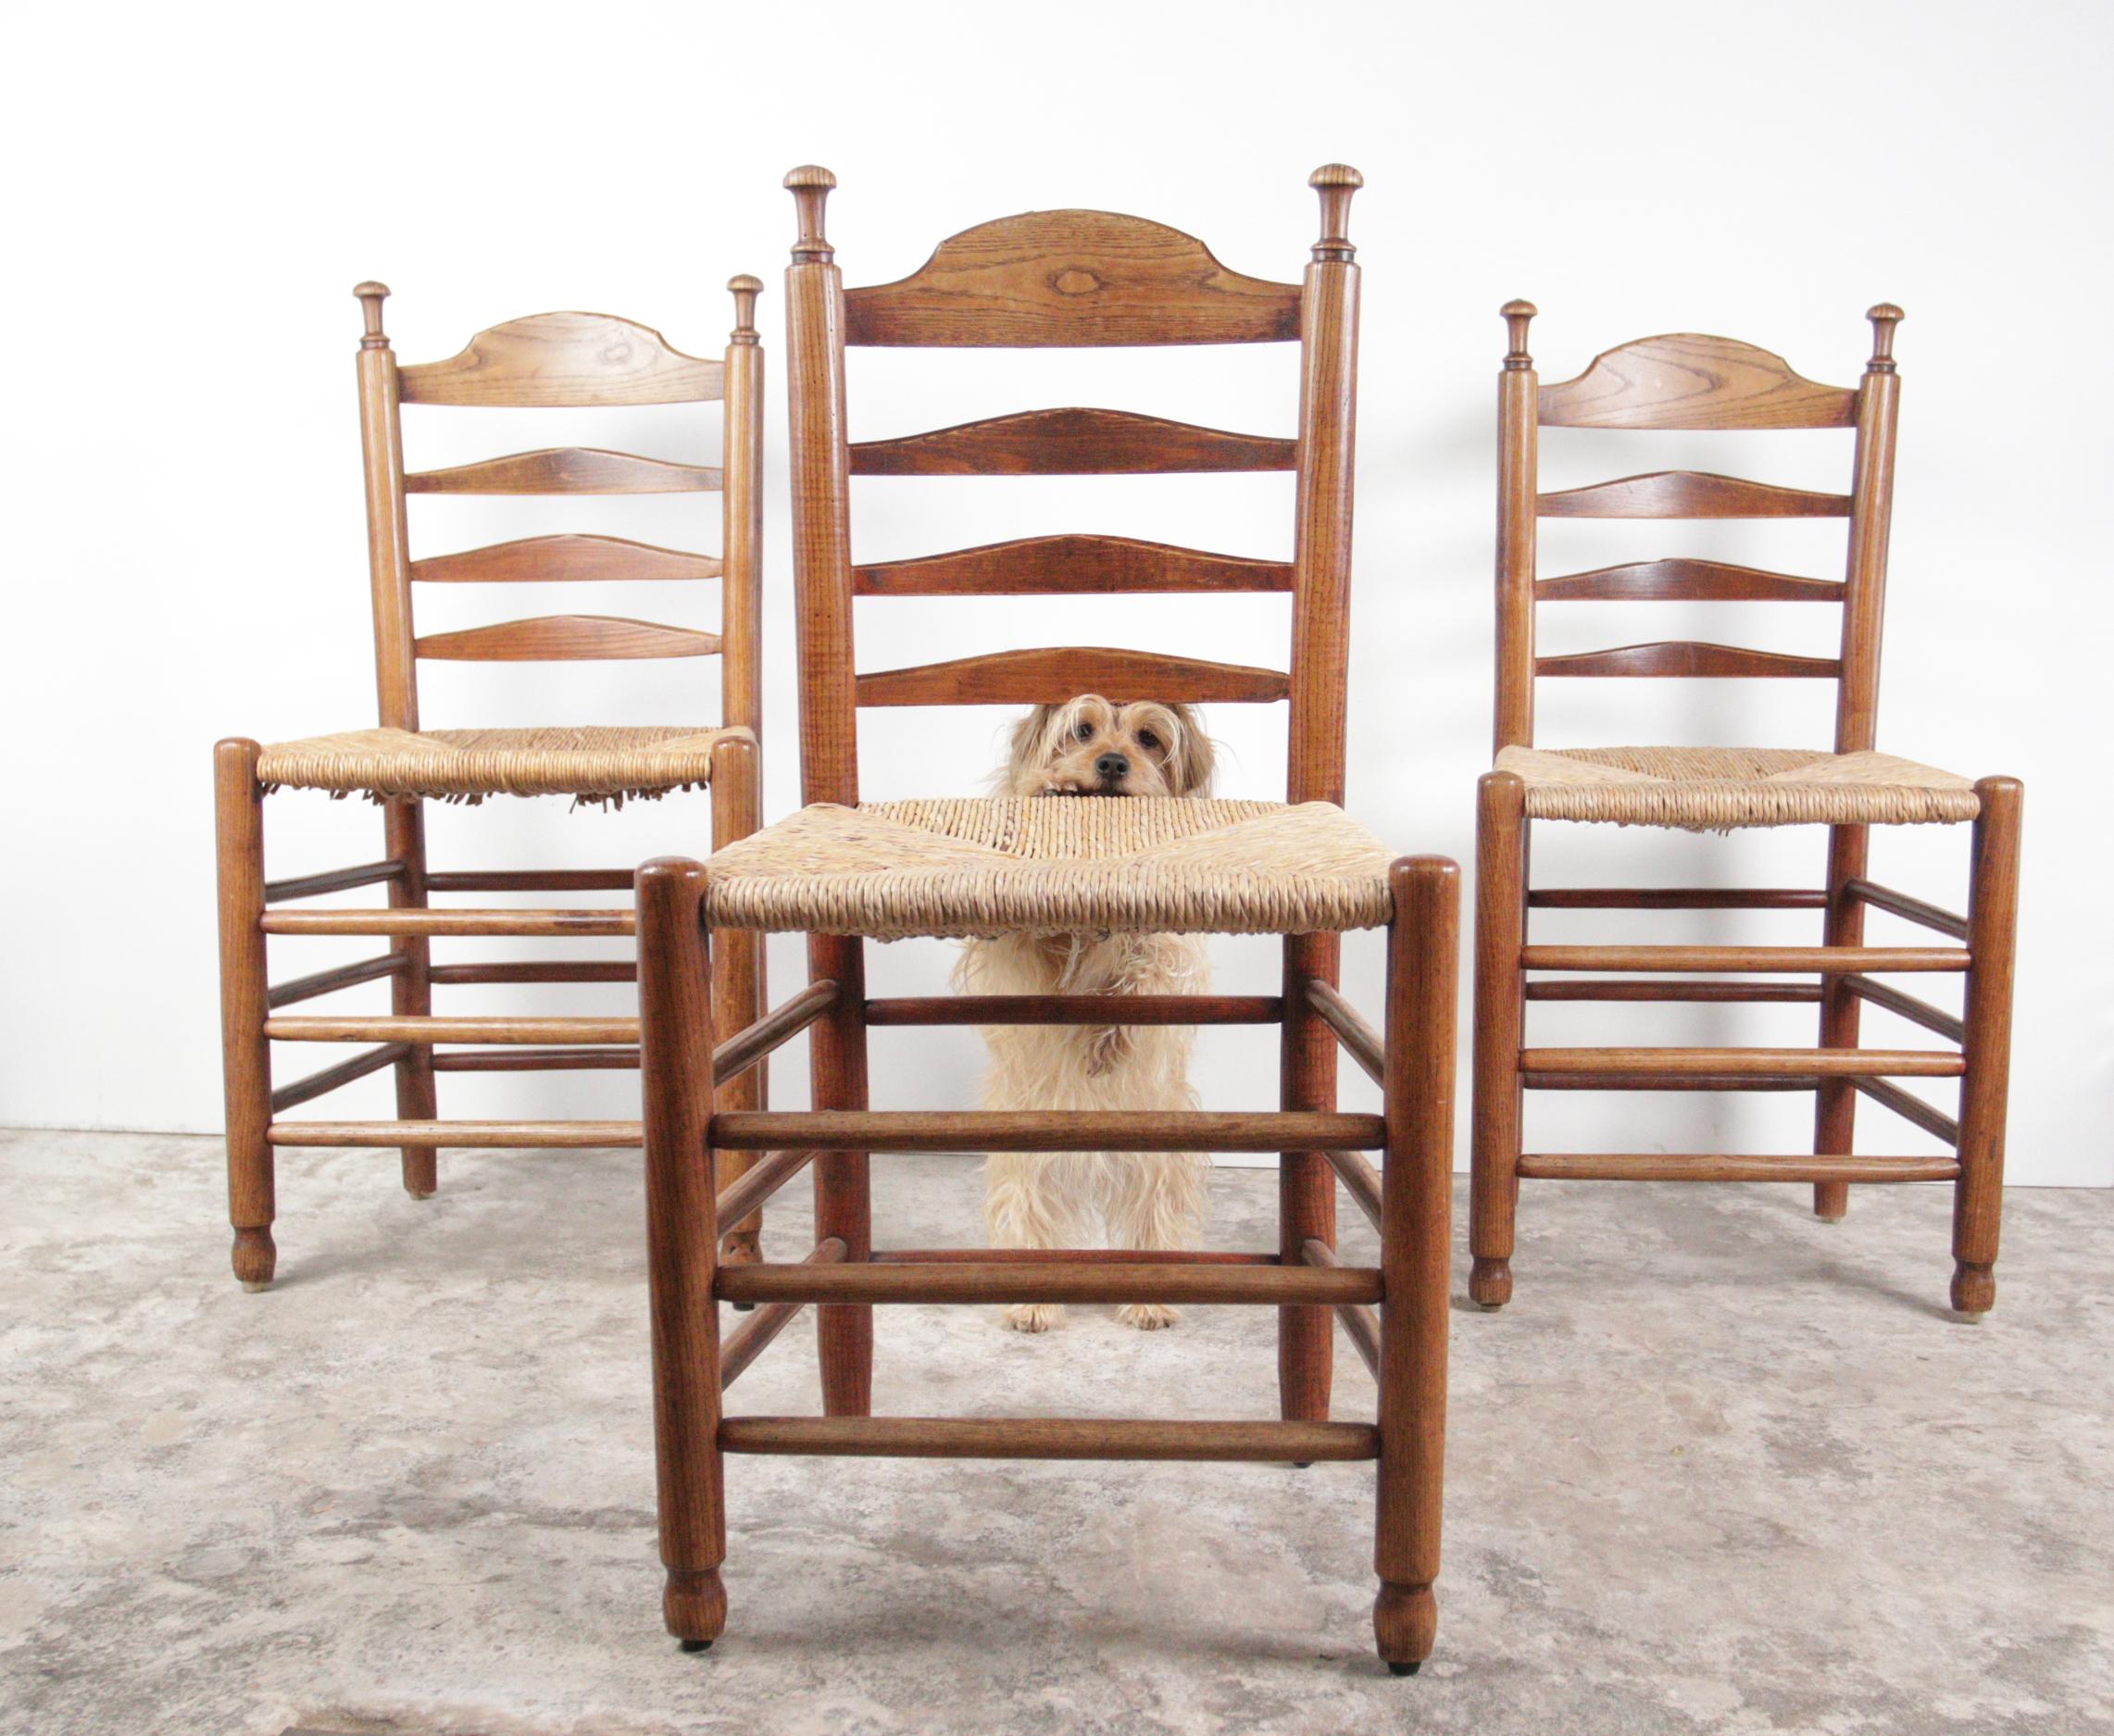 Schöne Stühle aus dem späten 19. Jahrhundert aus massivem Eichenholz mit geflochtener Sitzfläche.
Sie passen perfekt zum Stil von Designern wie Charlotte Perriand und Charles Dudouyt.
Sie sind bequem und haben ein sehr schönes, warmes Aussehen, da